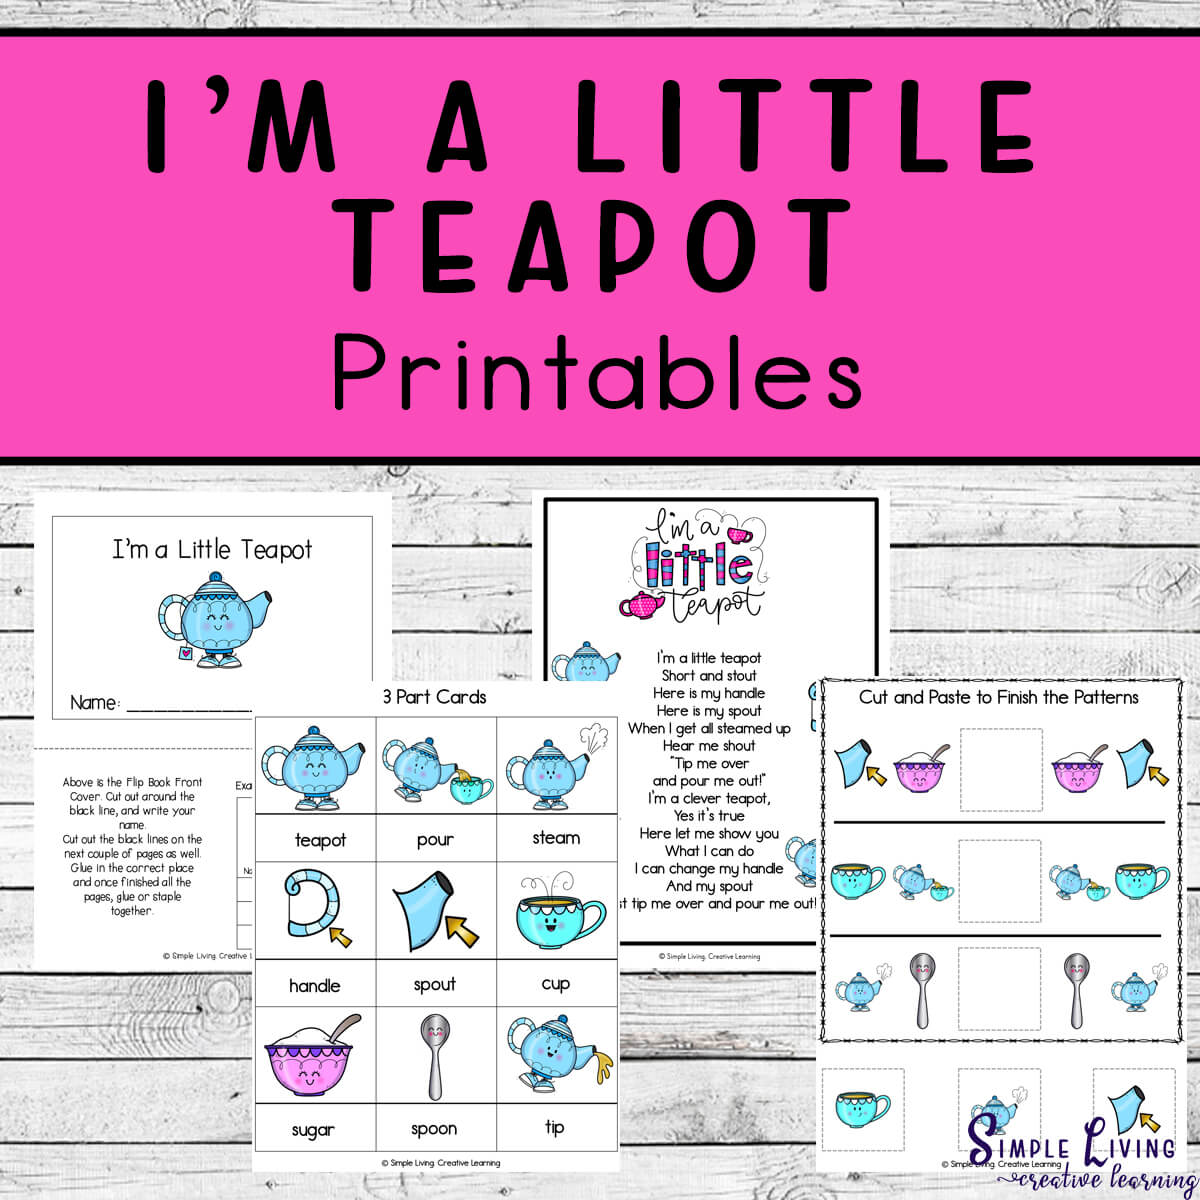 I'm a Little Teapot Printables four pages